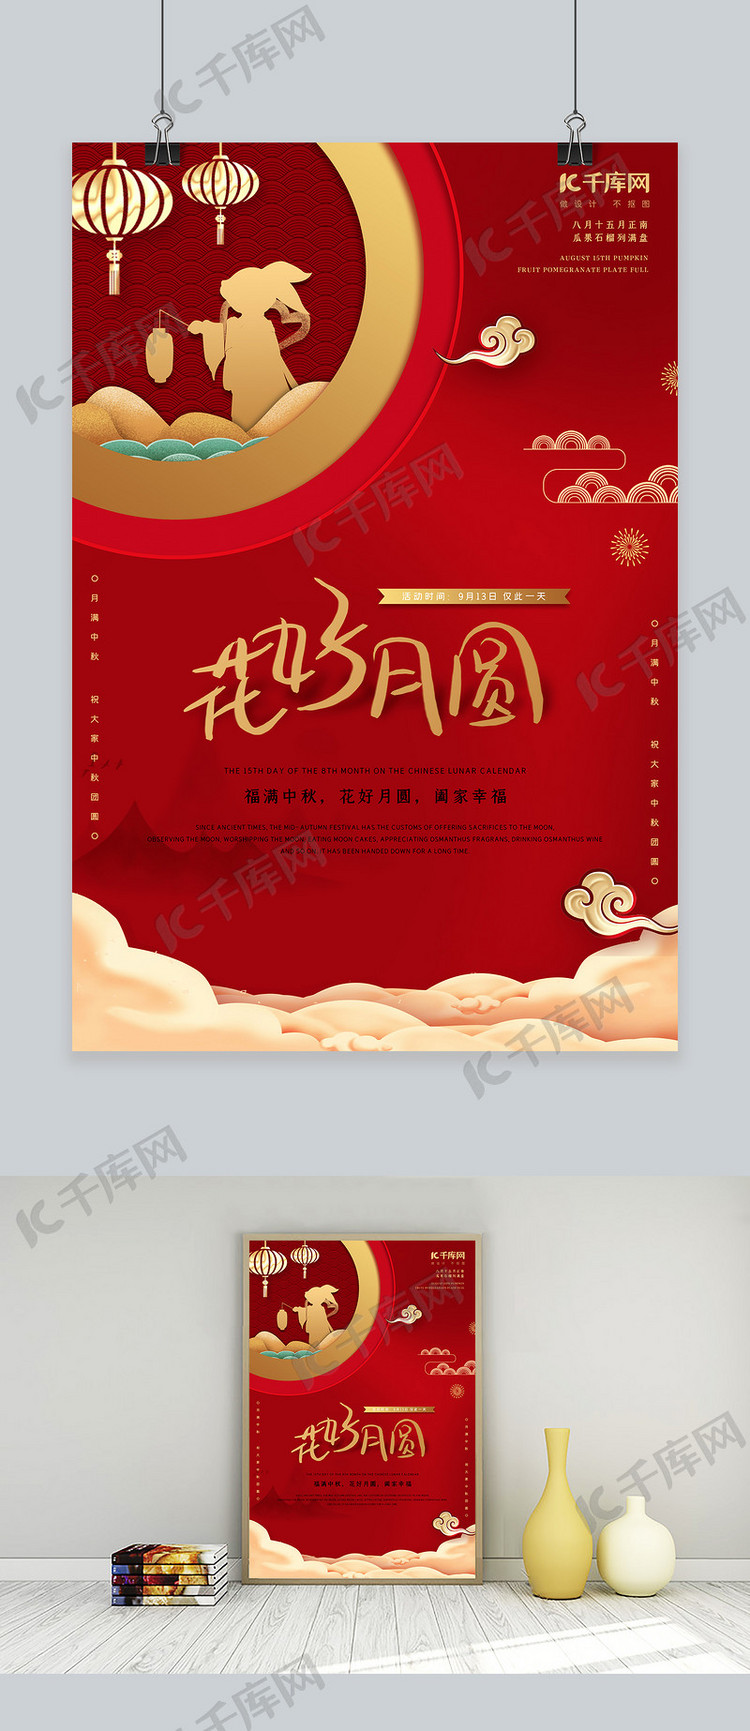 简约红金中国传统节日中秋节宣传海报